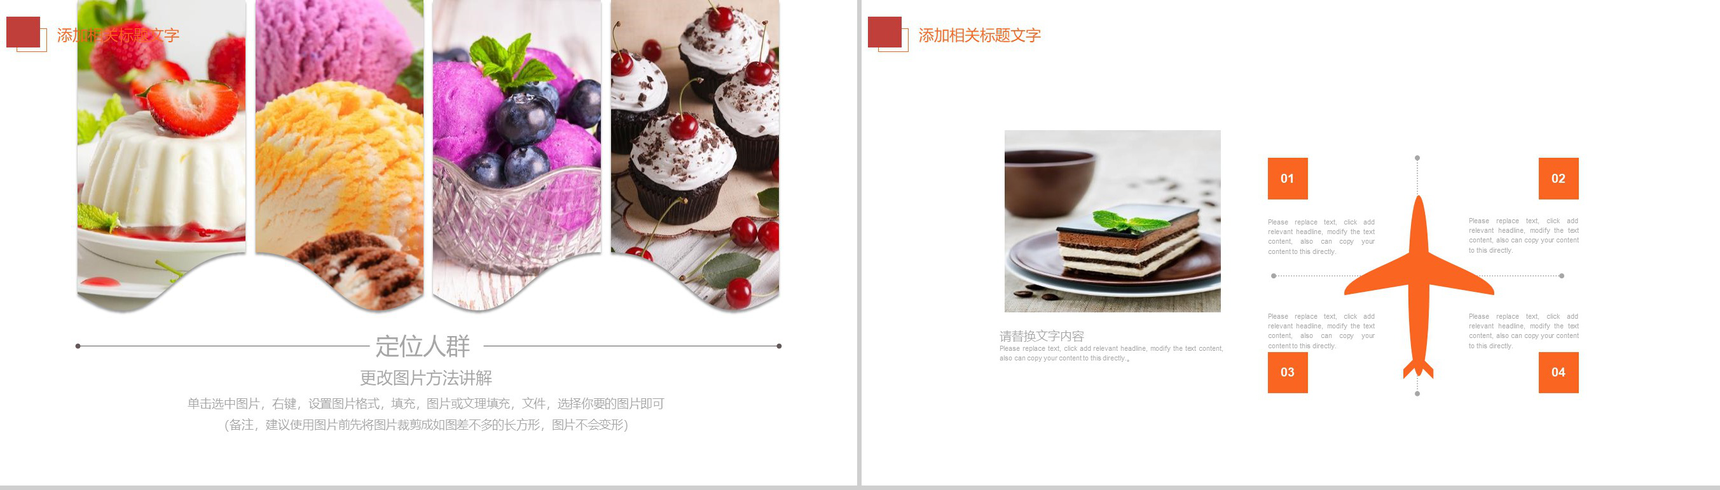 蛋糕甜点主题品牌推广工作汇报PPT模板-6